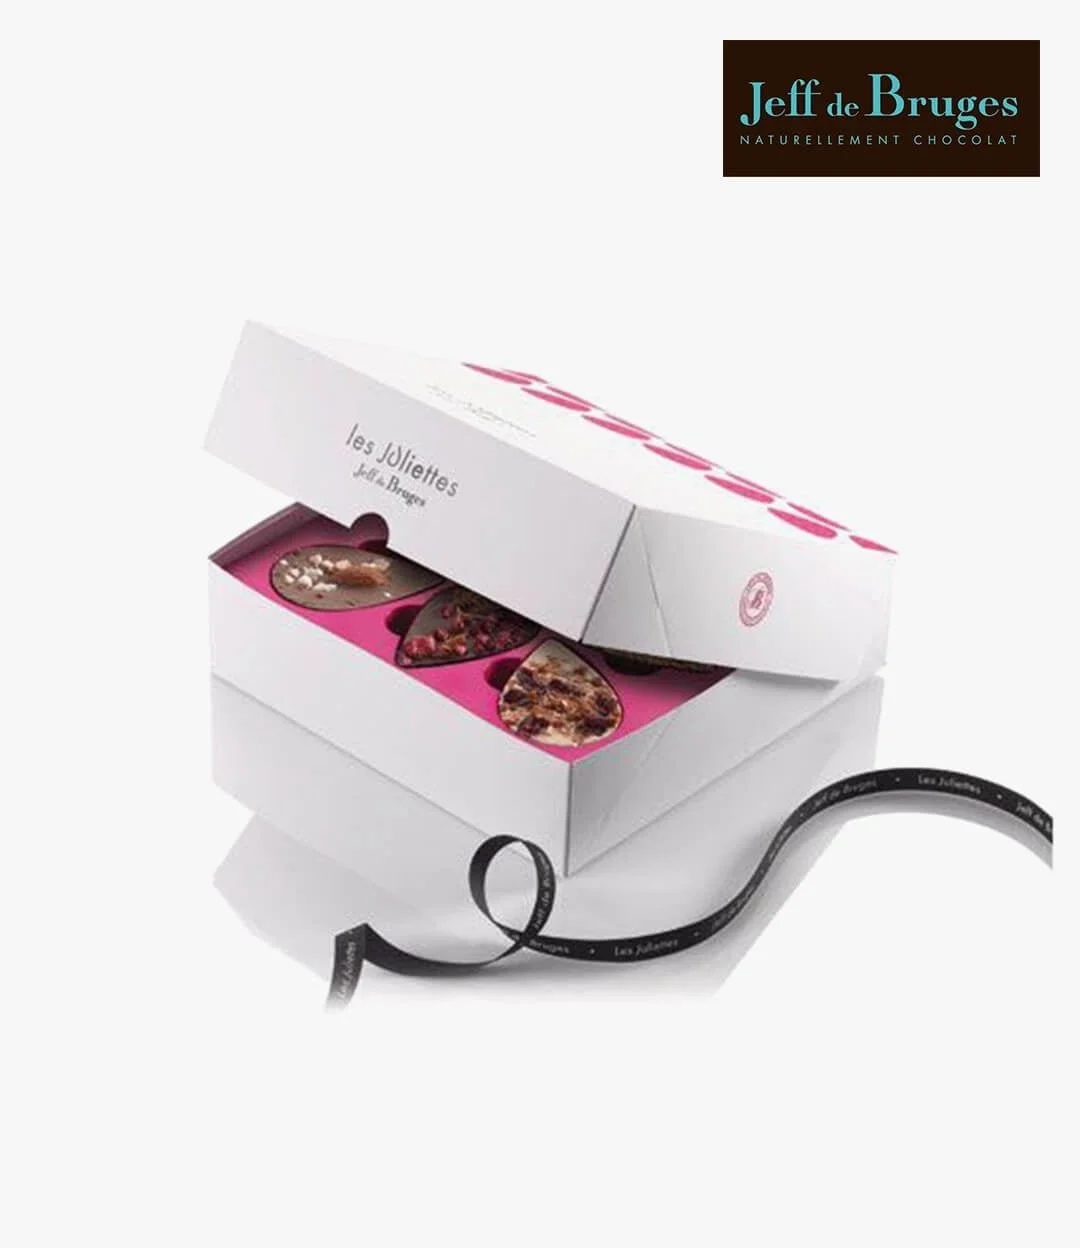 صندوق شوكولاتة جولييت من جيف دي بروج (متوسط)